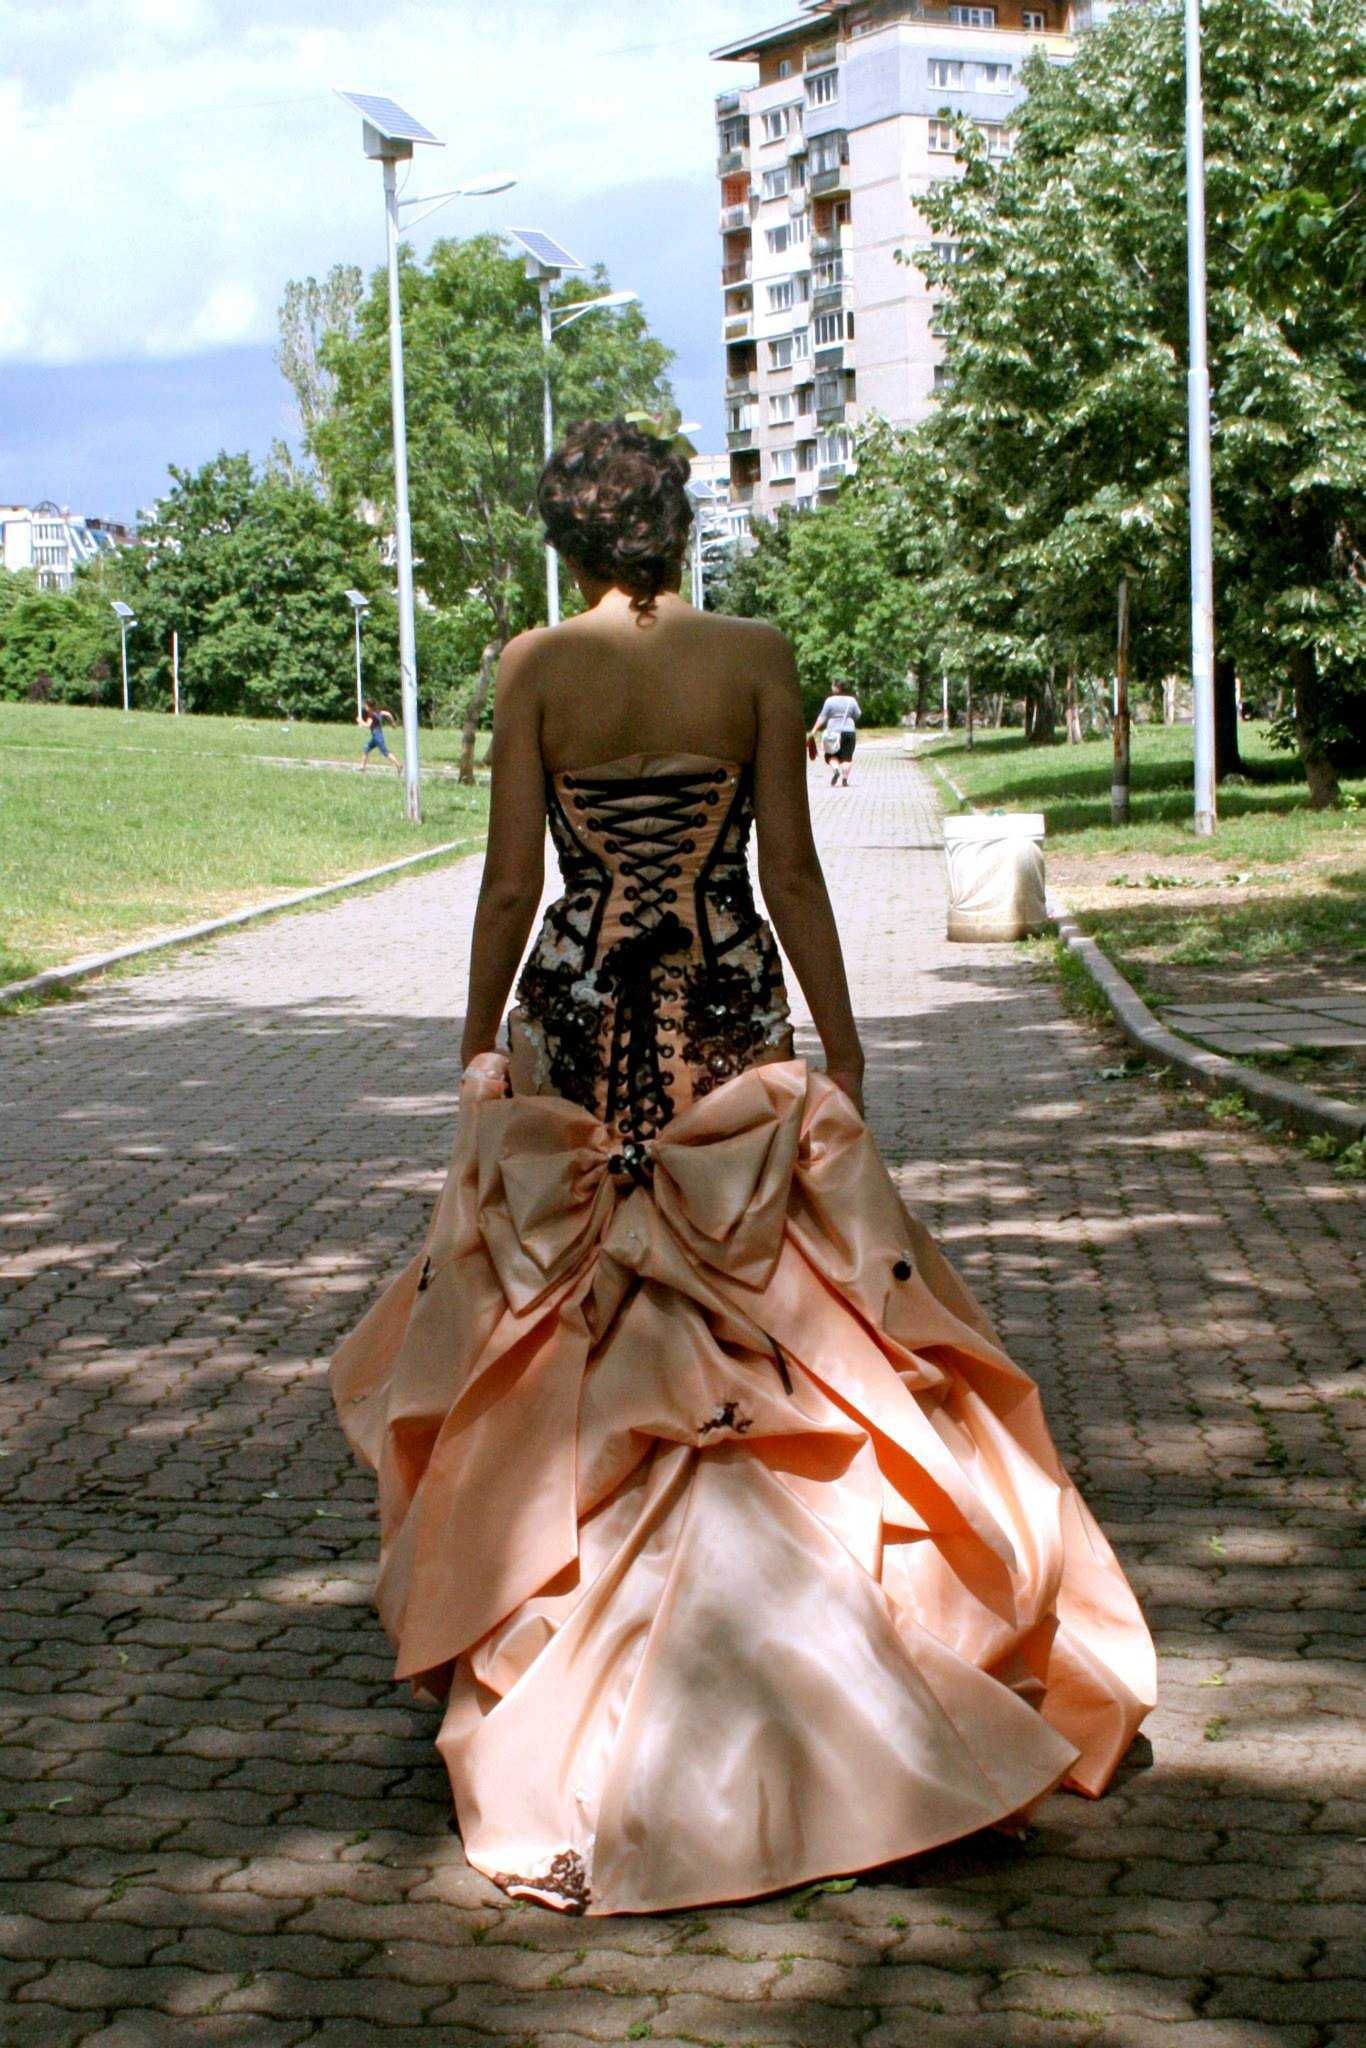 Абитуриентска рокля - по поръчка, дизайнер Тери Георгиева